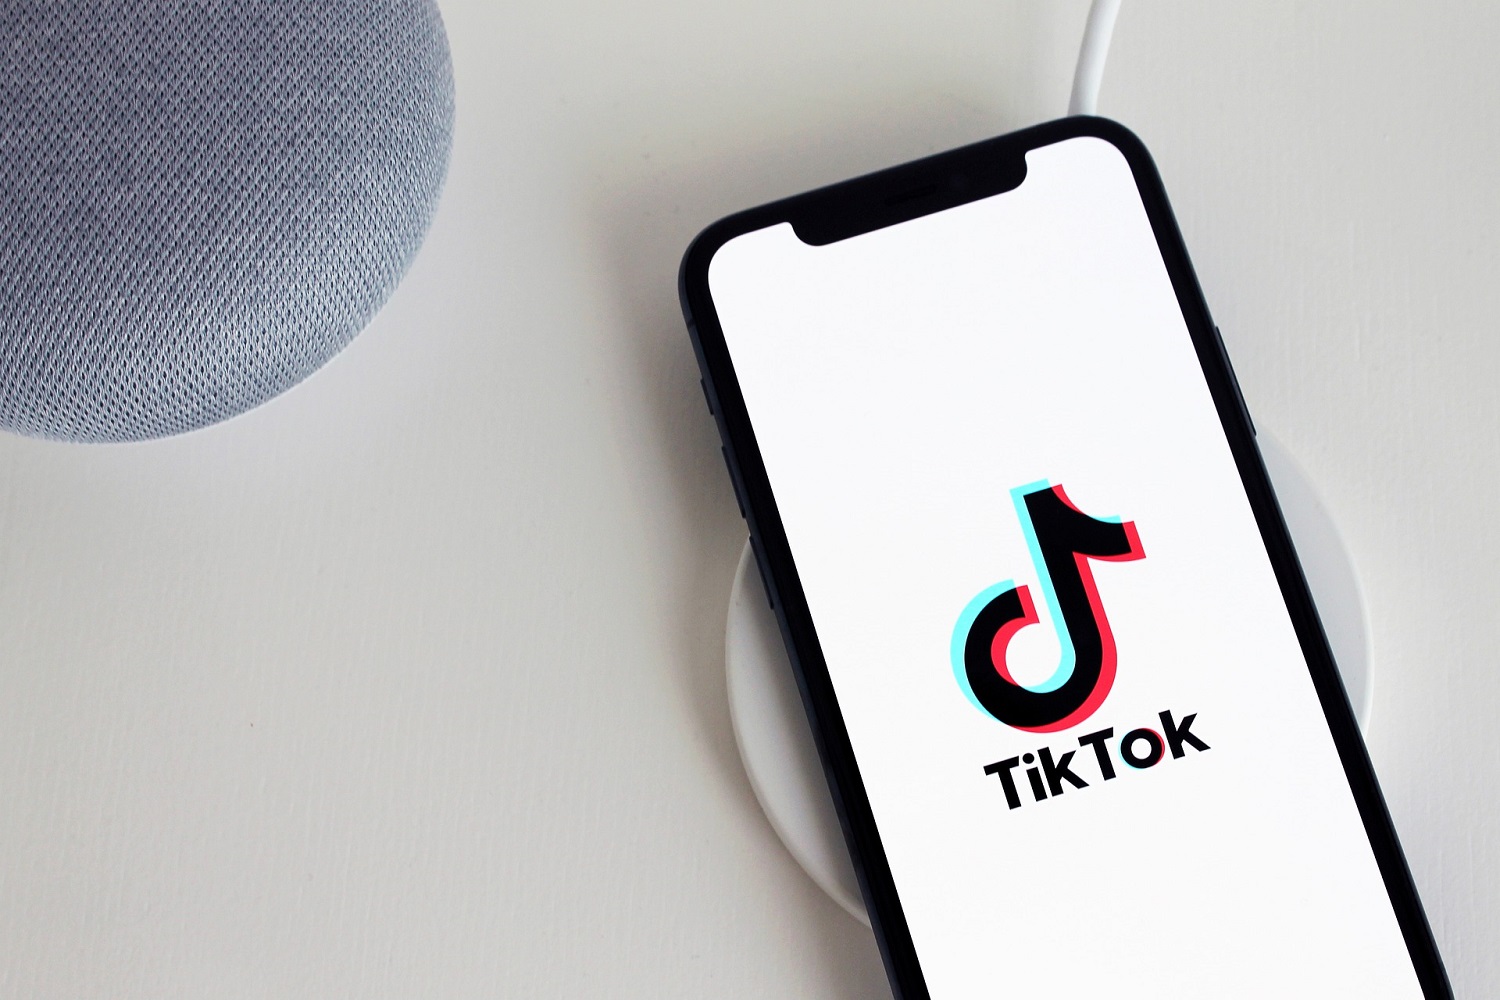 Um smartphone e dois outros dispositivos em uma mesa branca.  O smartphone tem o logotipo do TikTok na tela.